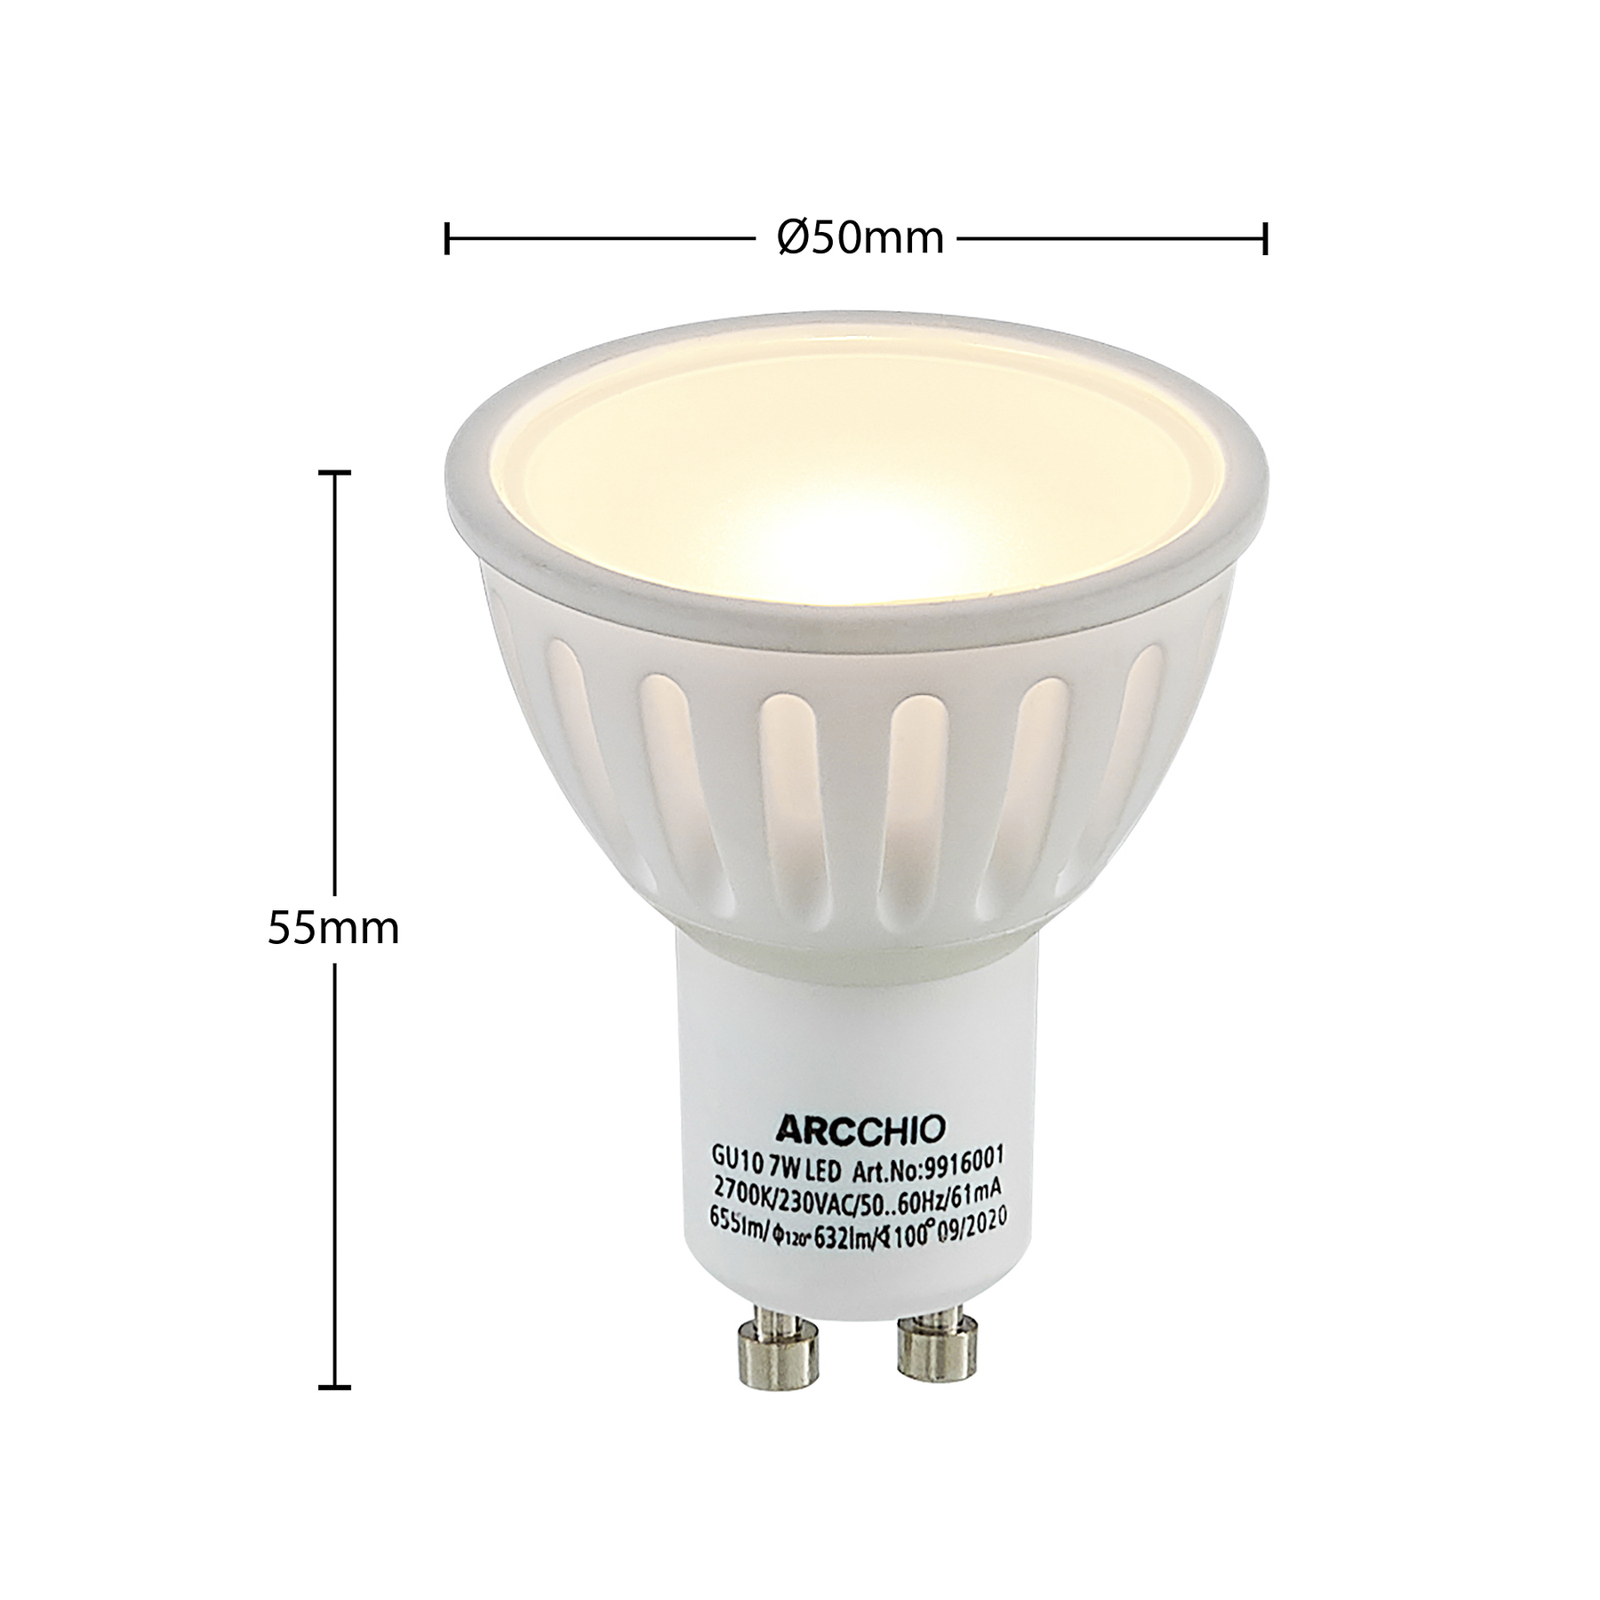 Arcchio reflector LED bulb GU10 100° 5W 3,000K 3x